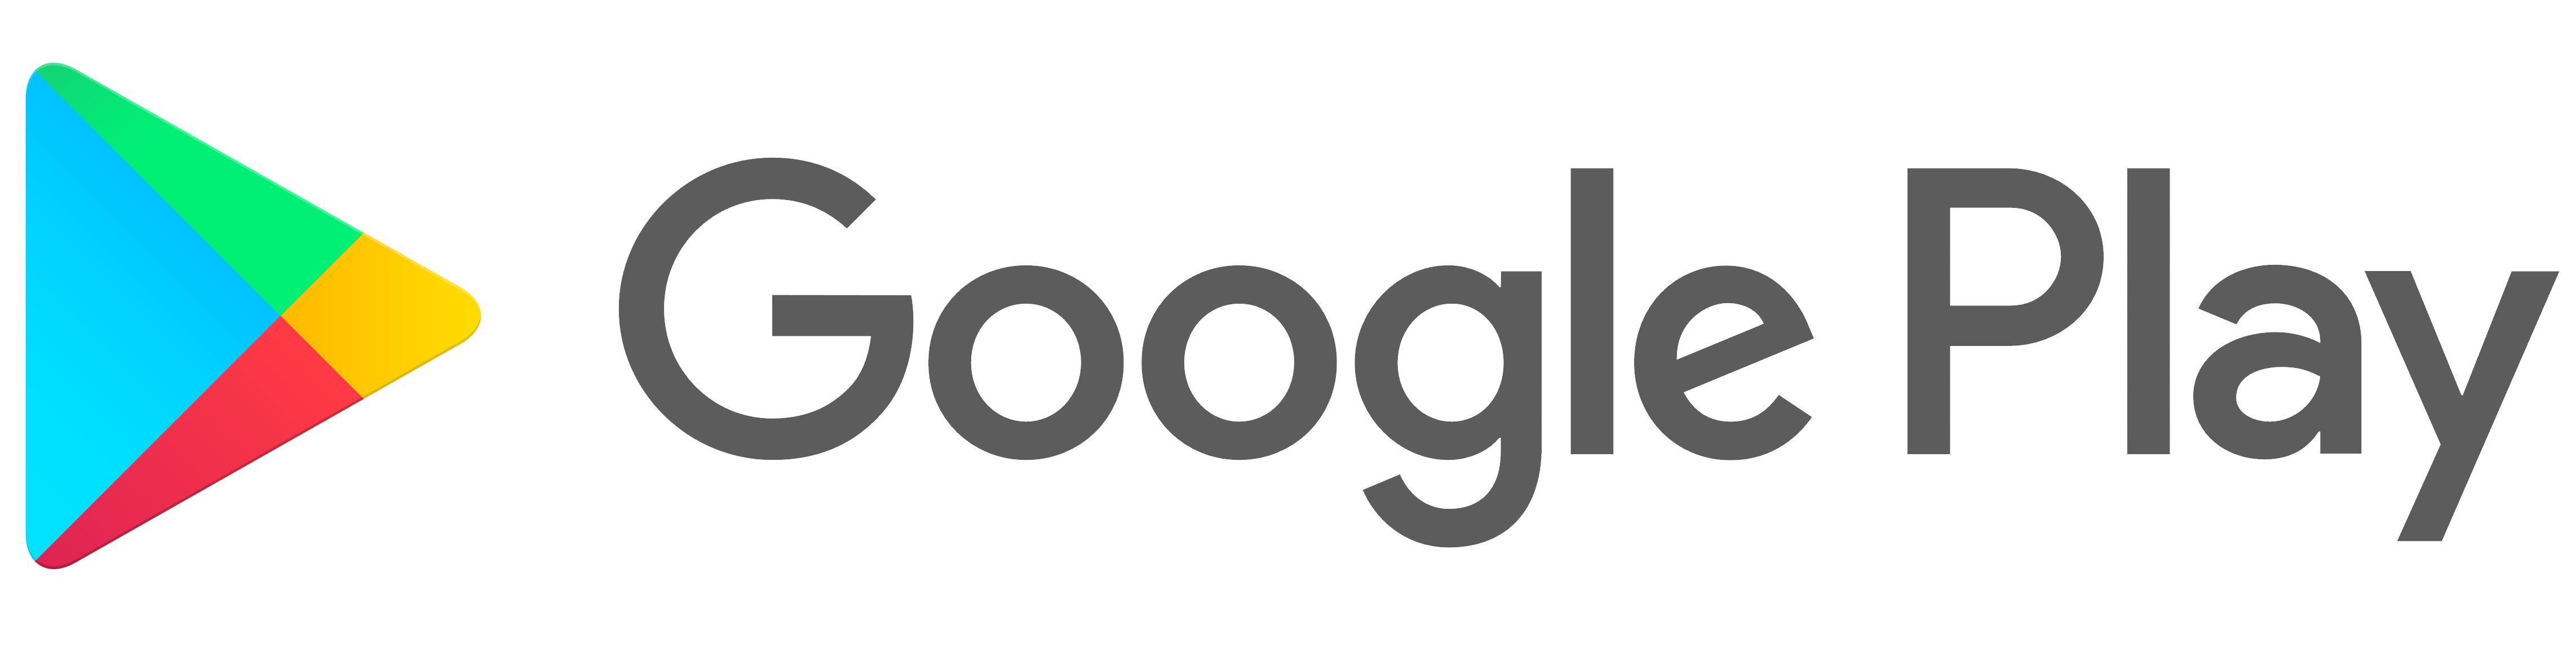 Google Play logo, logotype